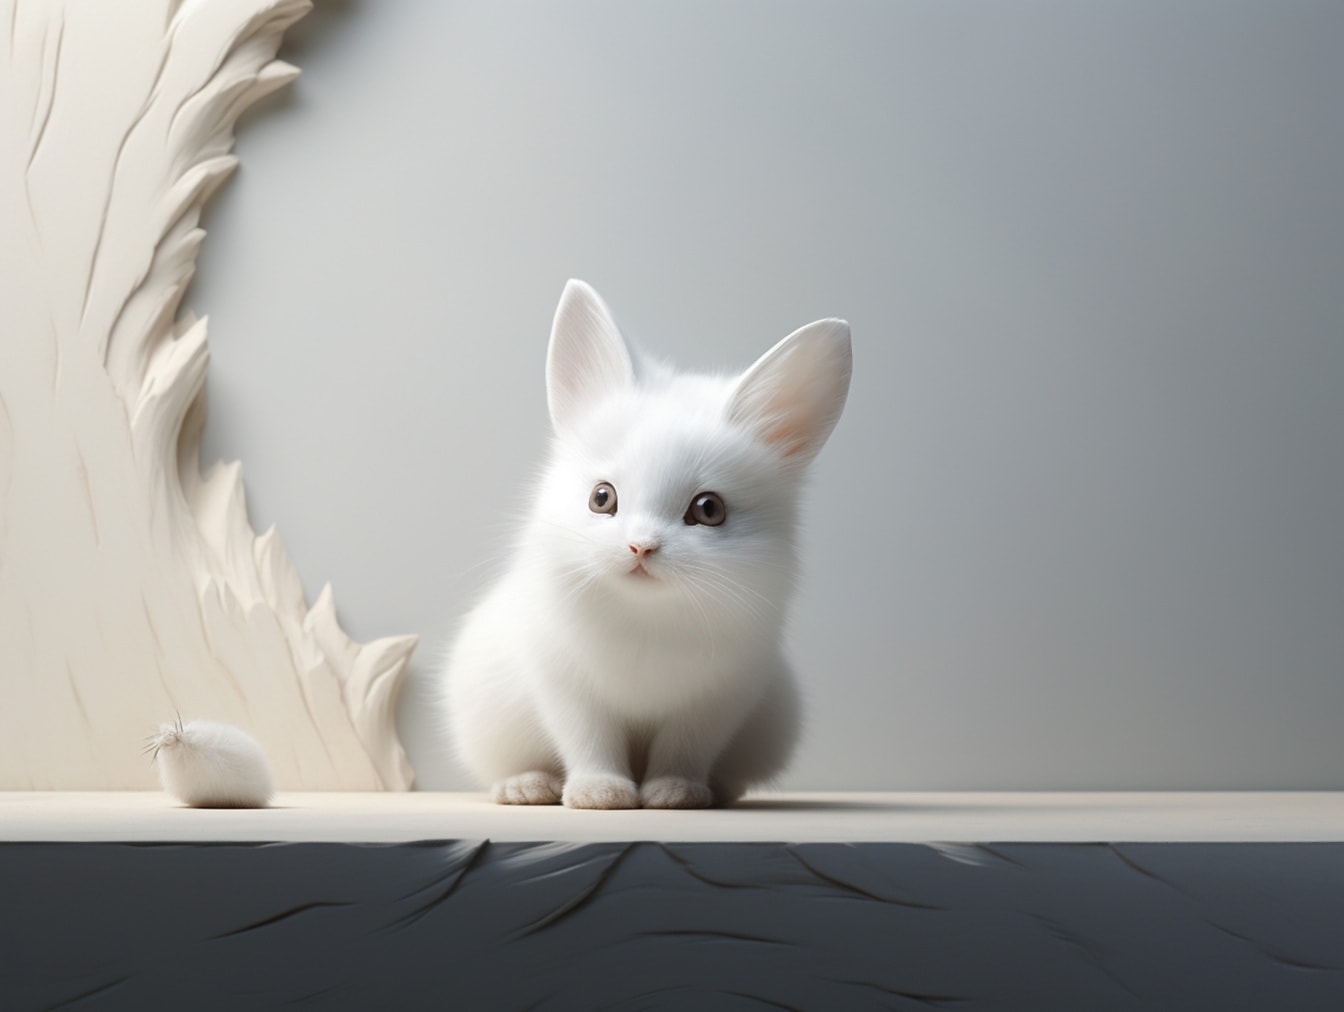 Illustrasjon av fantasiskapningen hvit kattungekanin